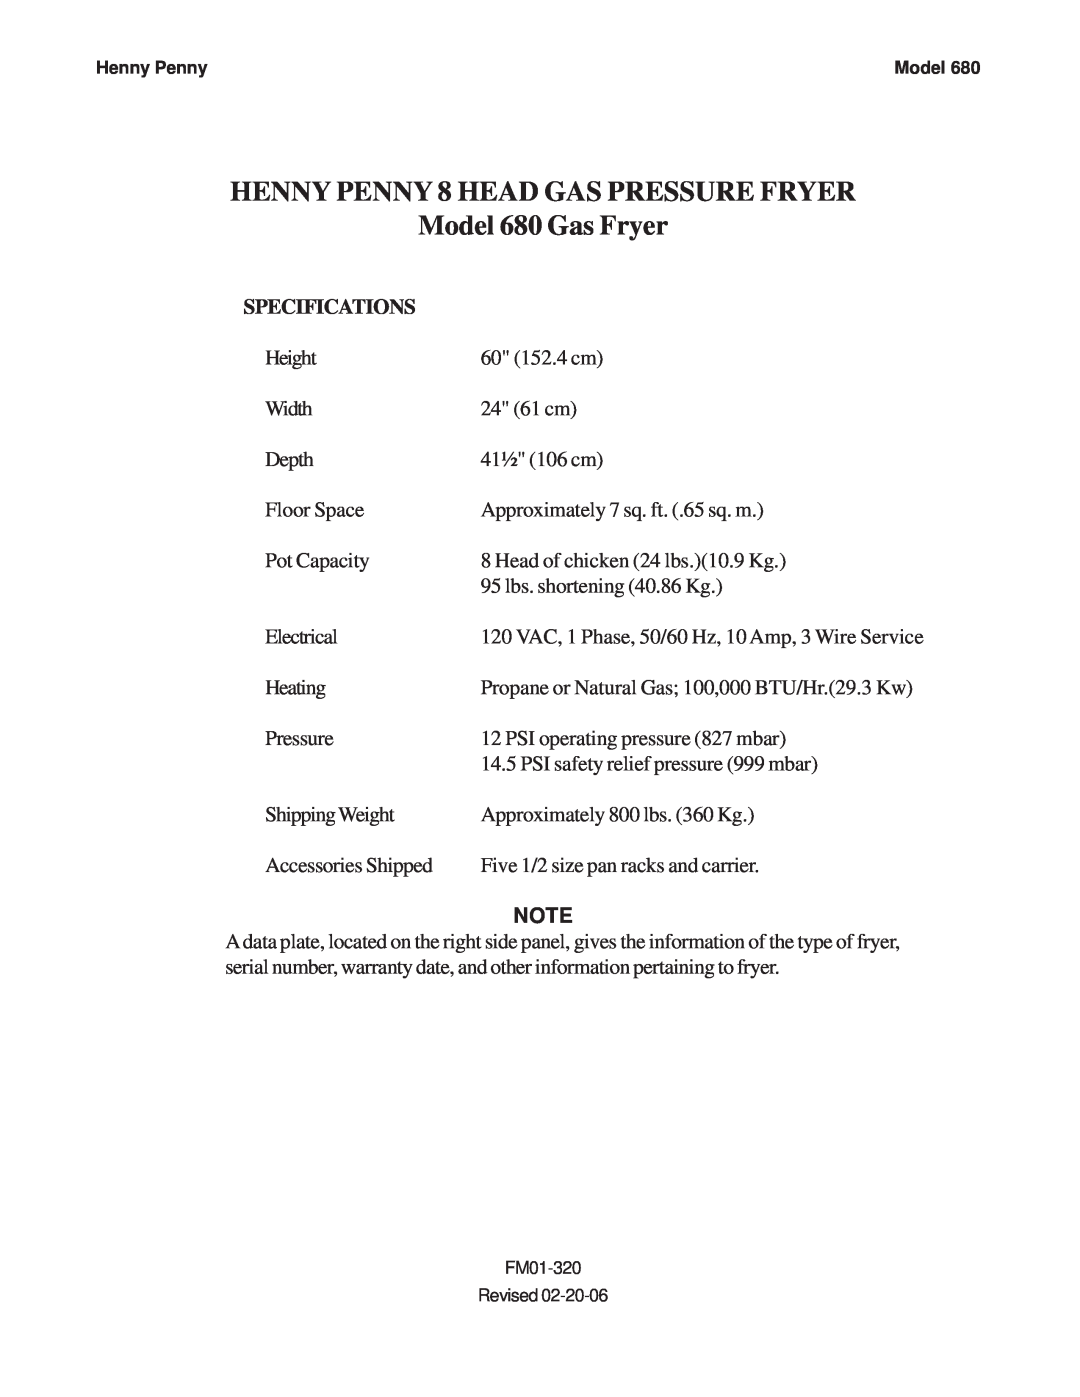 Henny Penny specifications HENNY PENNY 8 HEAD GAS PRESSURE FRYER, Model 680 Gas Fryer, Specifications 